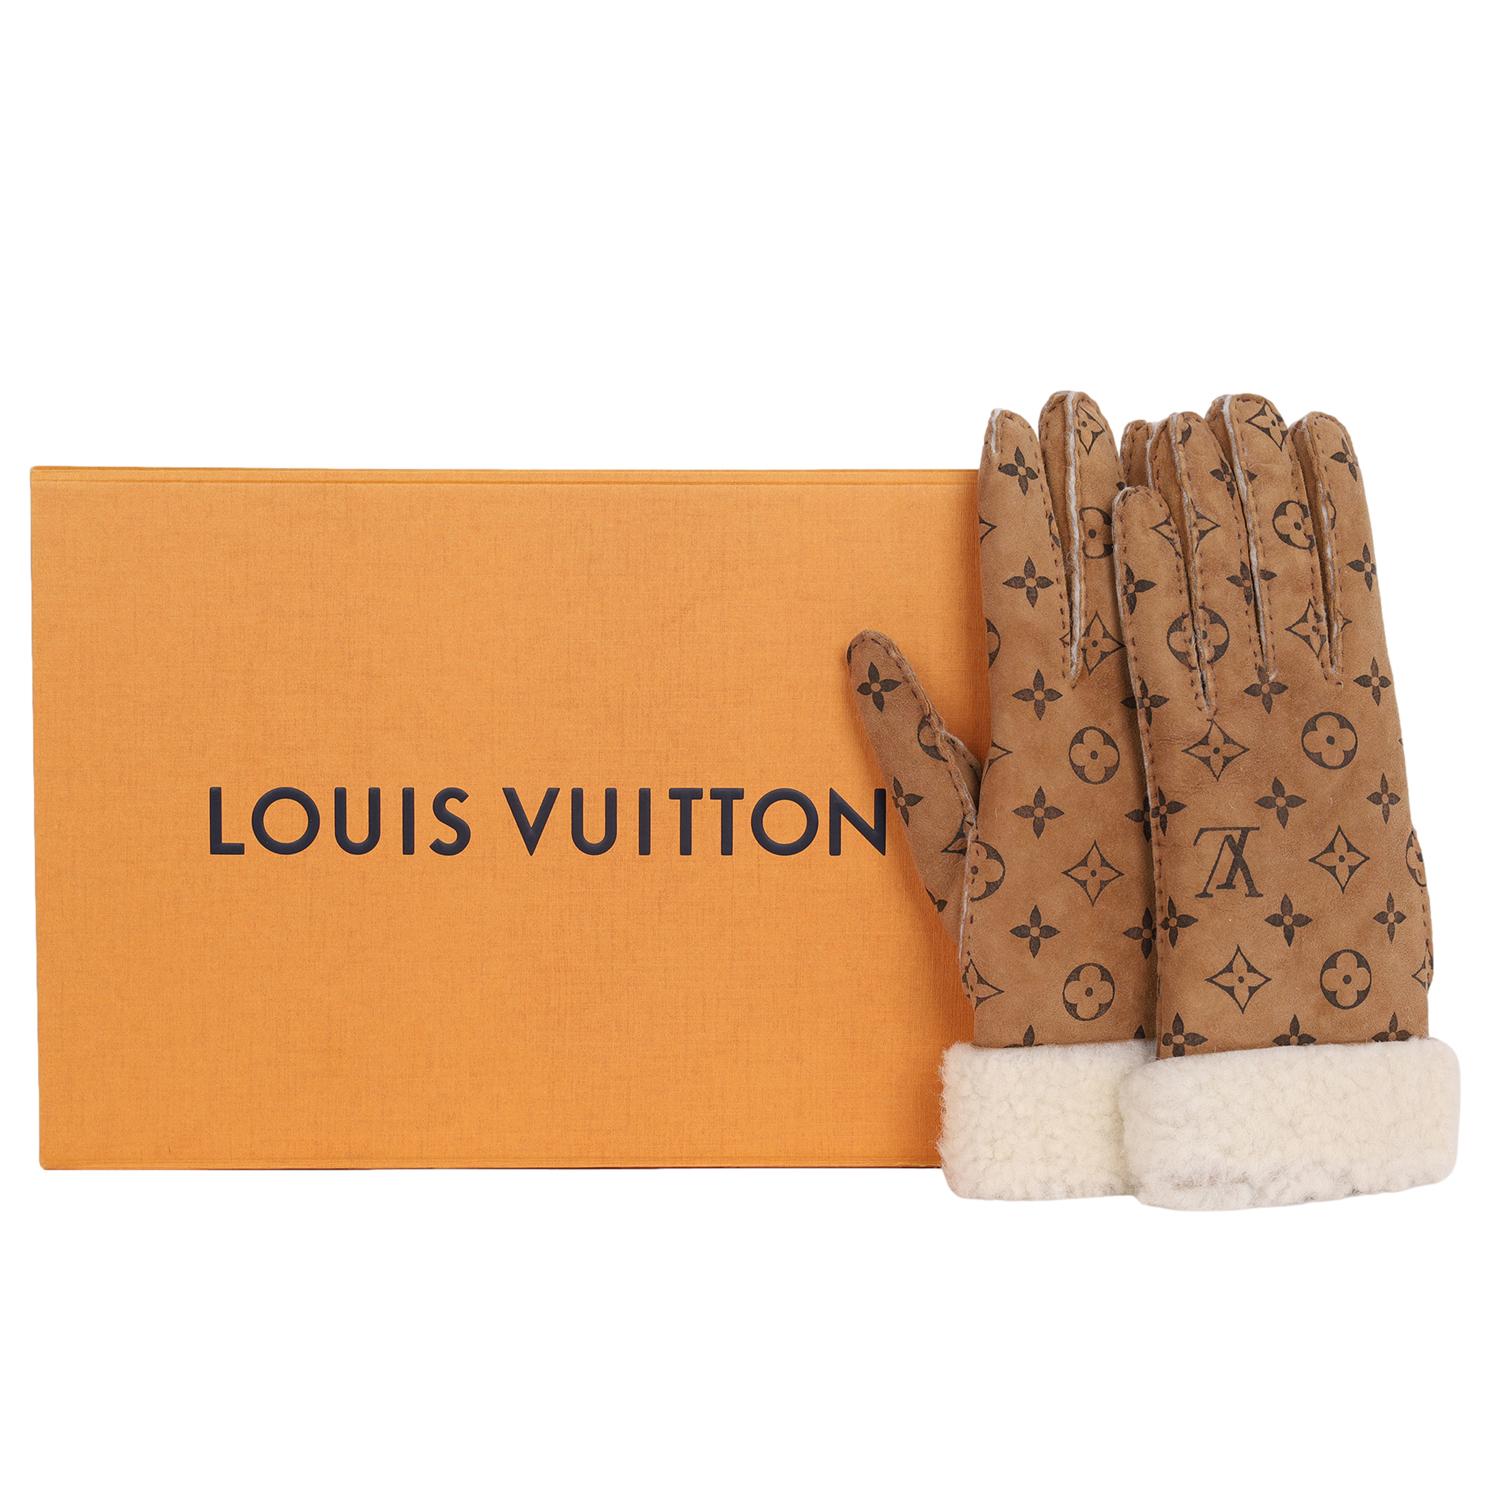 Authentiques gants en mouton monogramme Louis Vuitton Gant, d'occasion. Taille 7.5

Excellent état !

9.5 